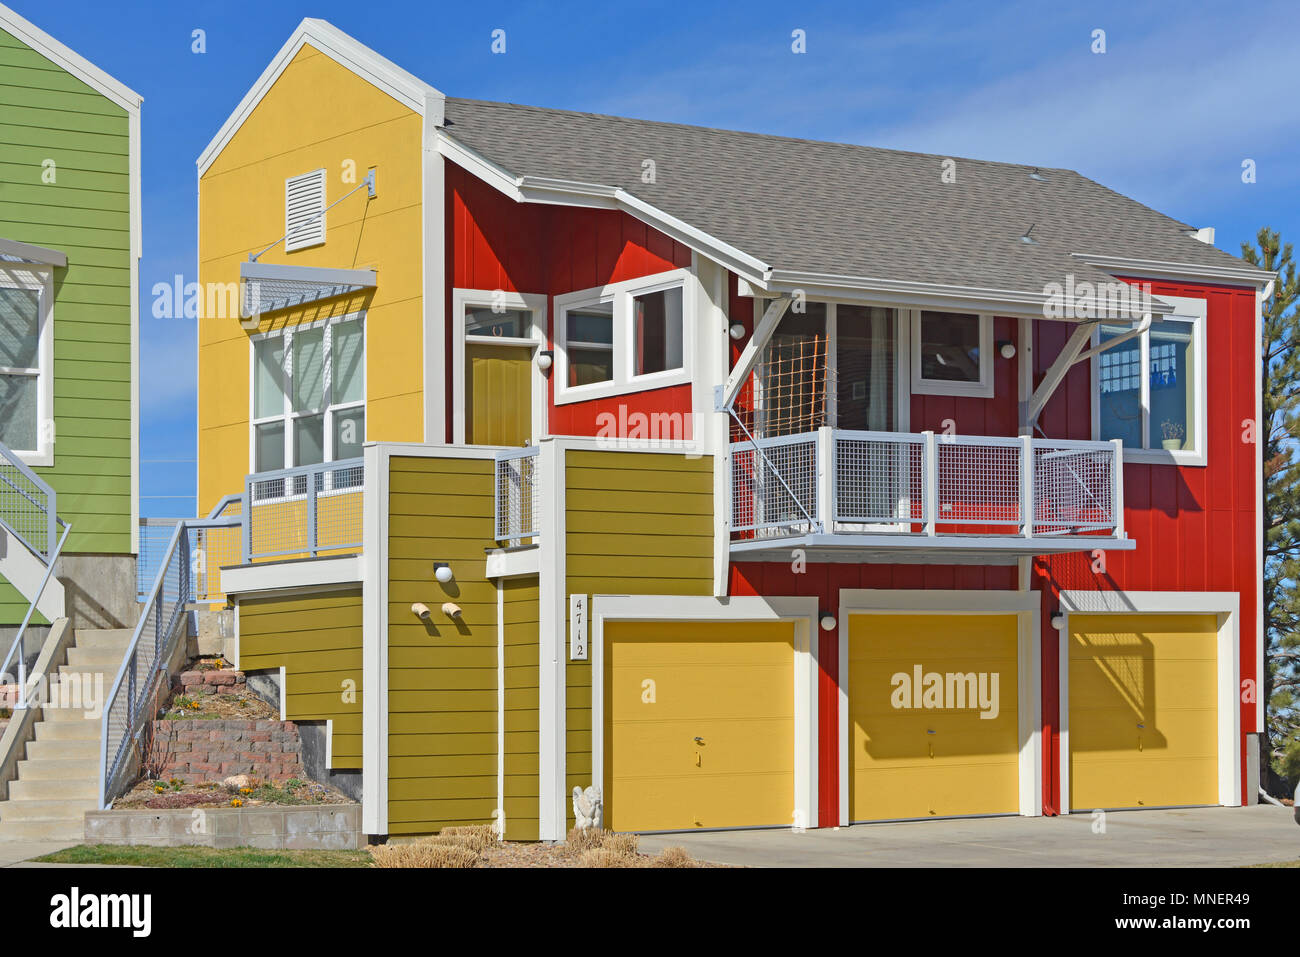 Urlaub Nachbarschaft Projekt, mit der Darstellung eines einzigen Einfamilienhaus in verschiedenen Farben bemalt, Boulder, Colorado, USA Stockfoto